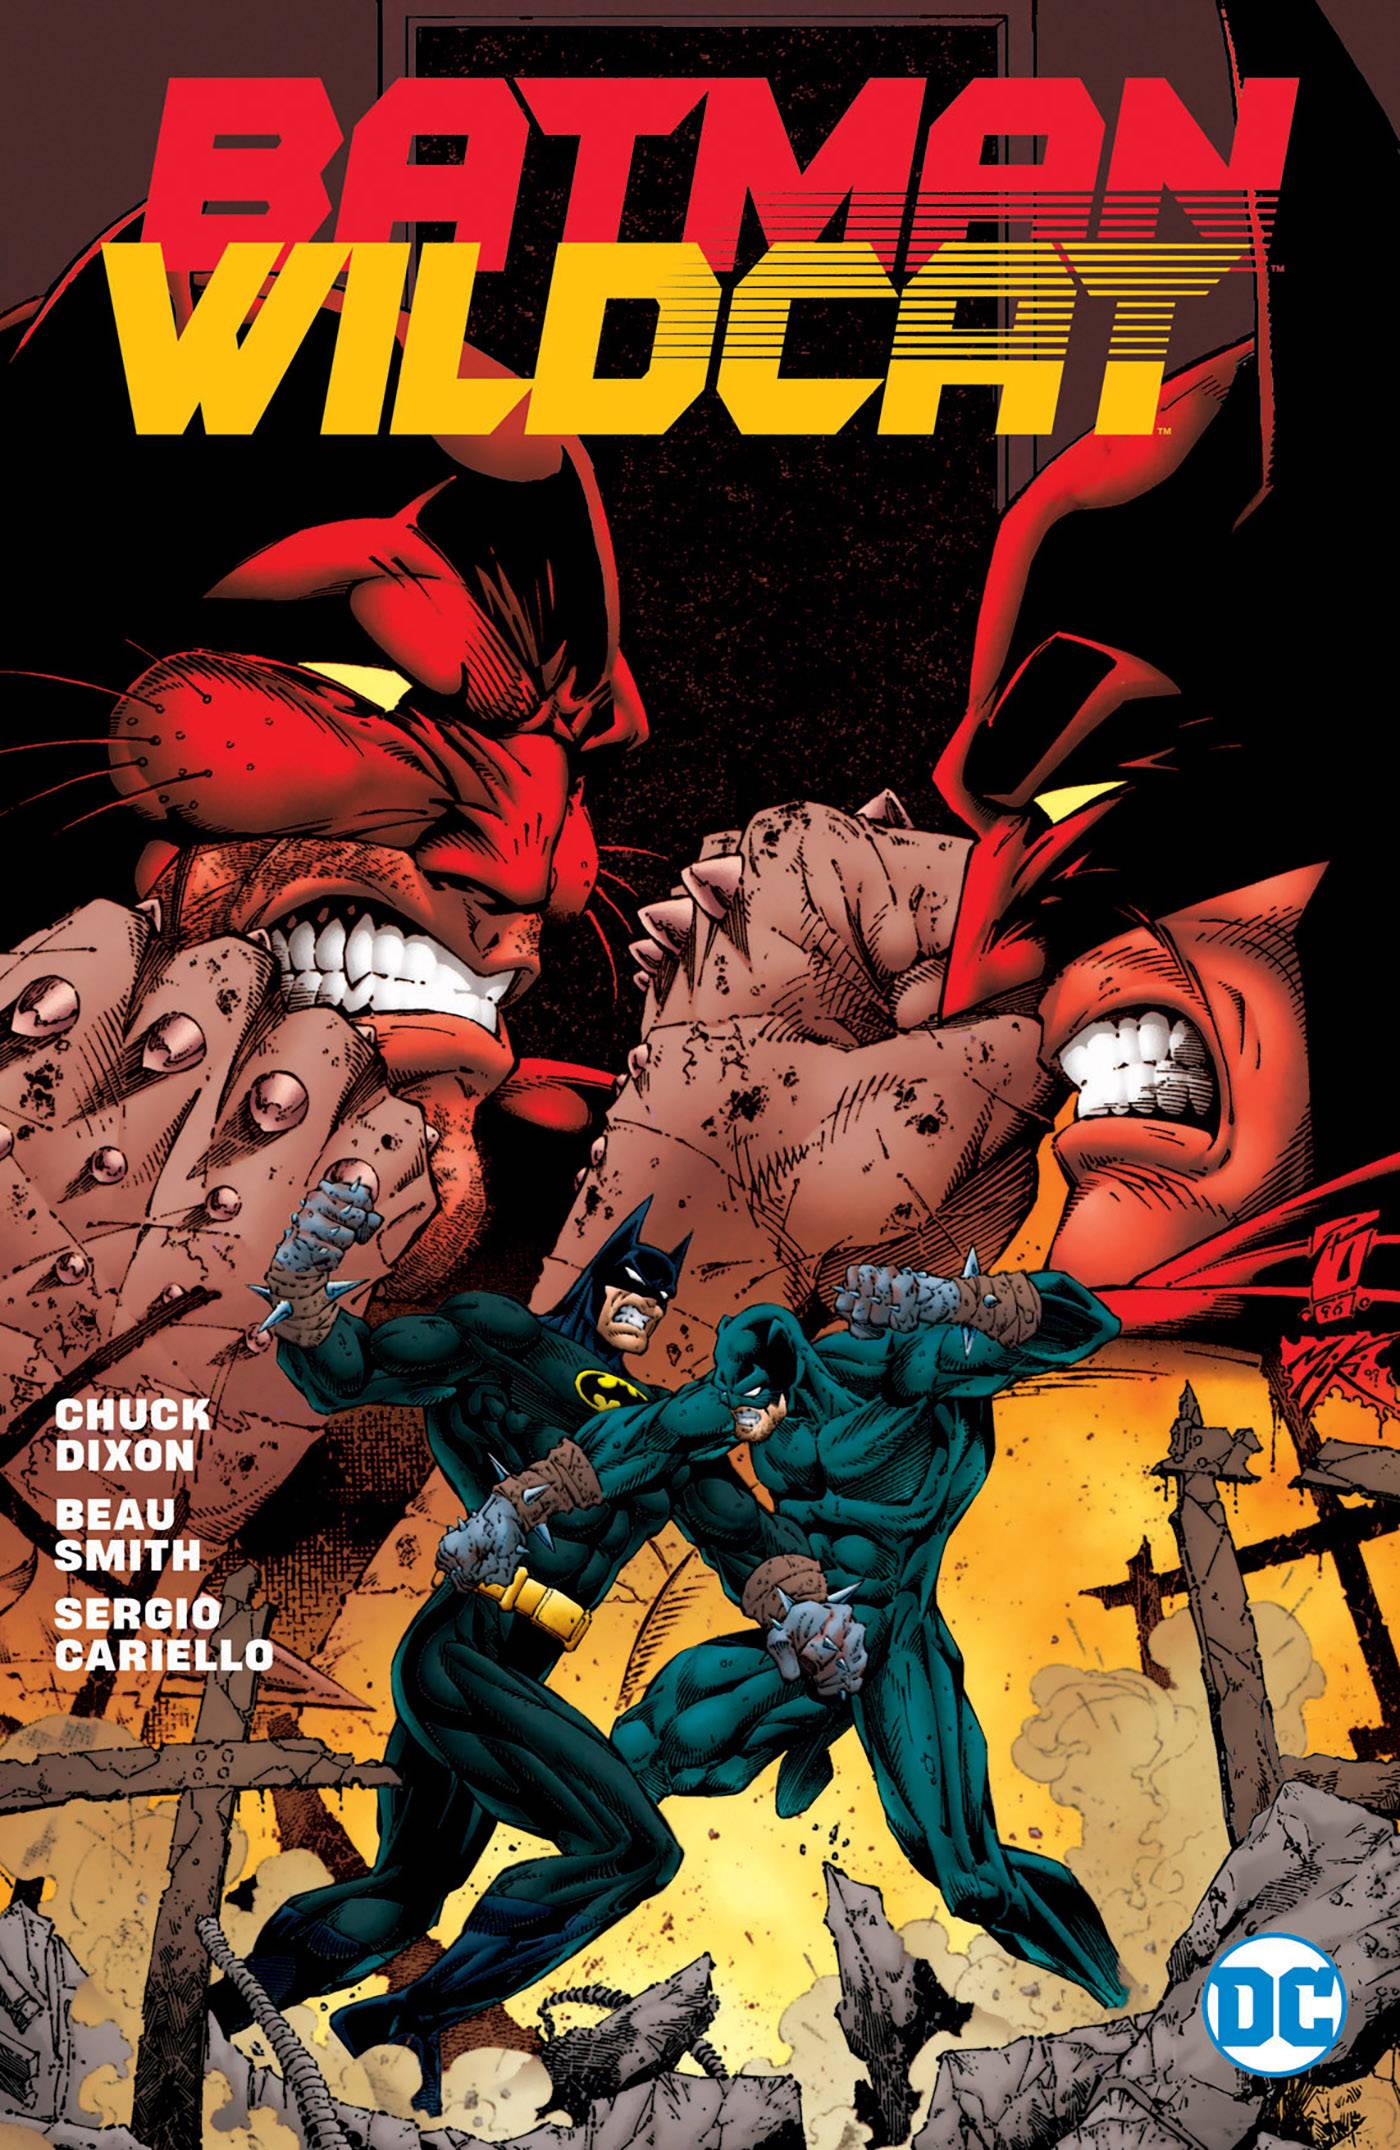 Batman Wildcat Graphic Novel